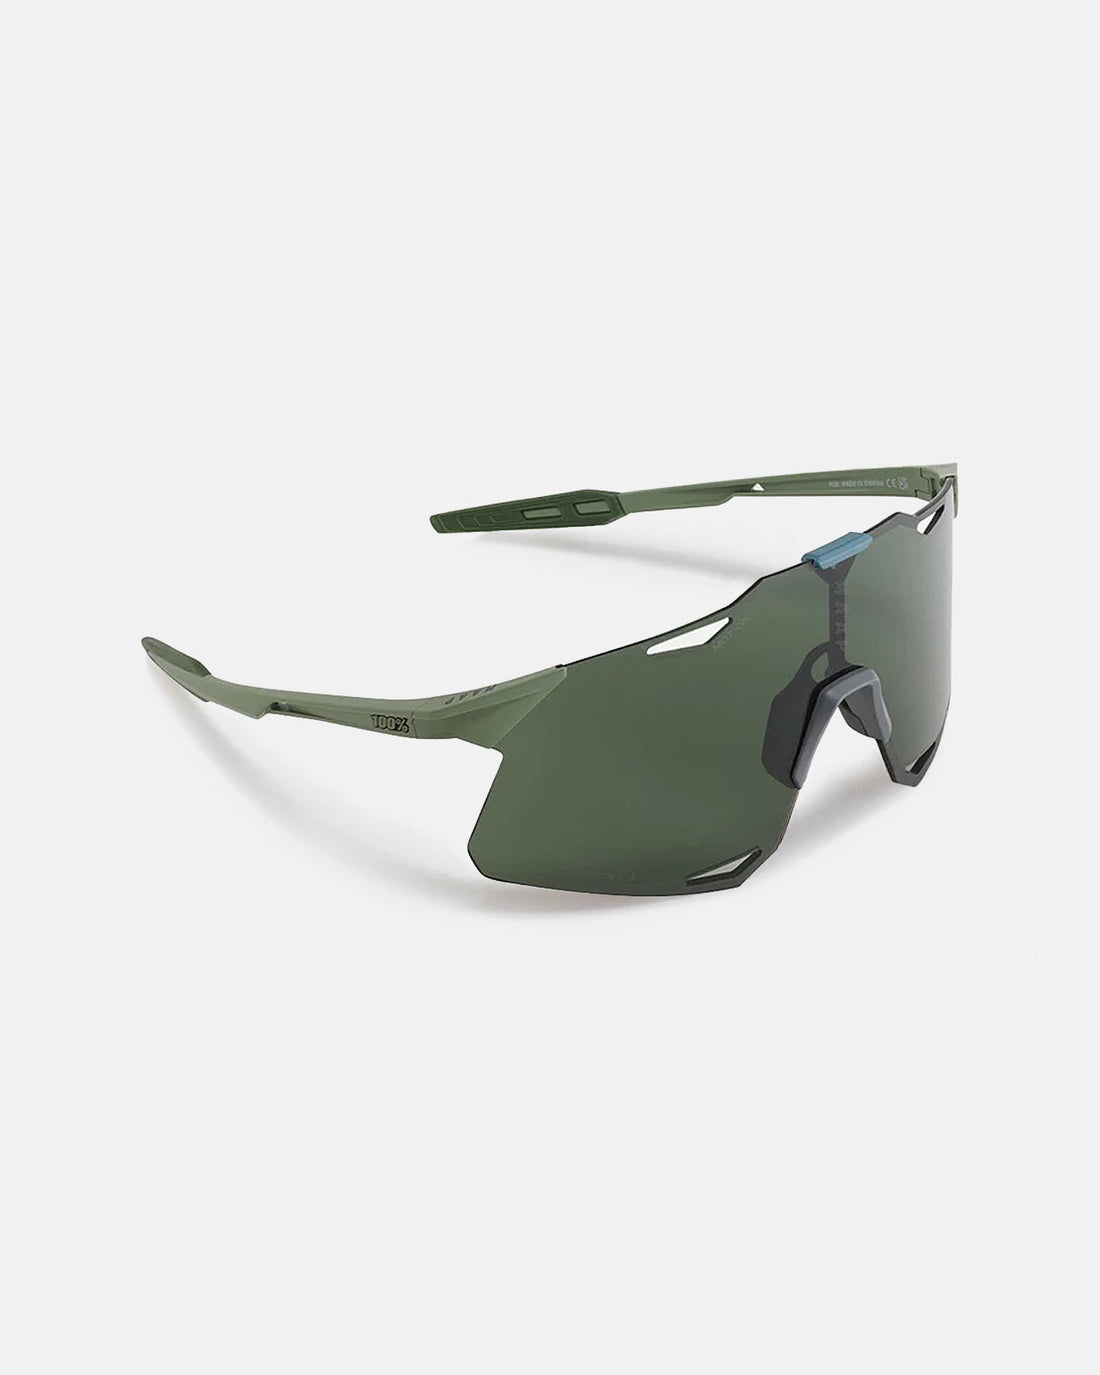 MAAP x 100% Hypercraft Sunglasses - Forest Green - MAAP